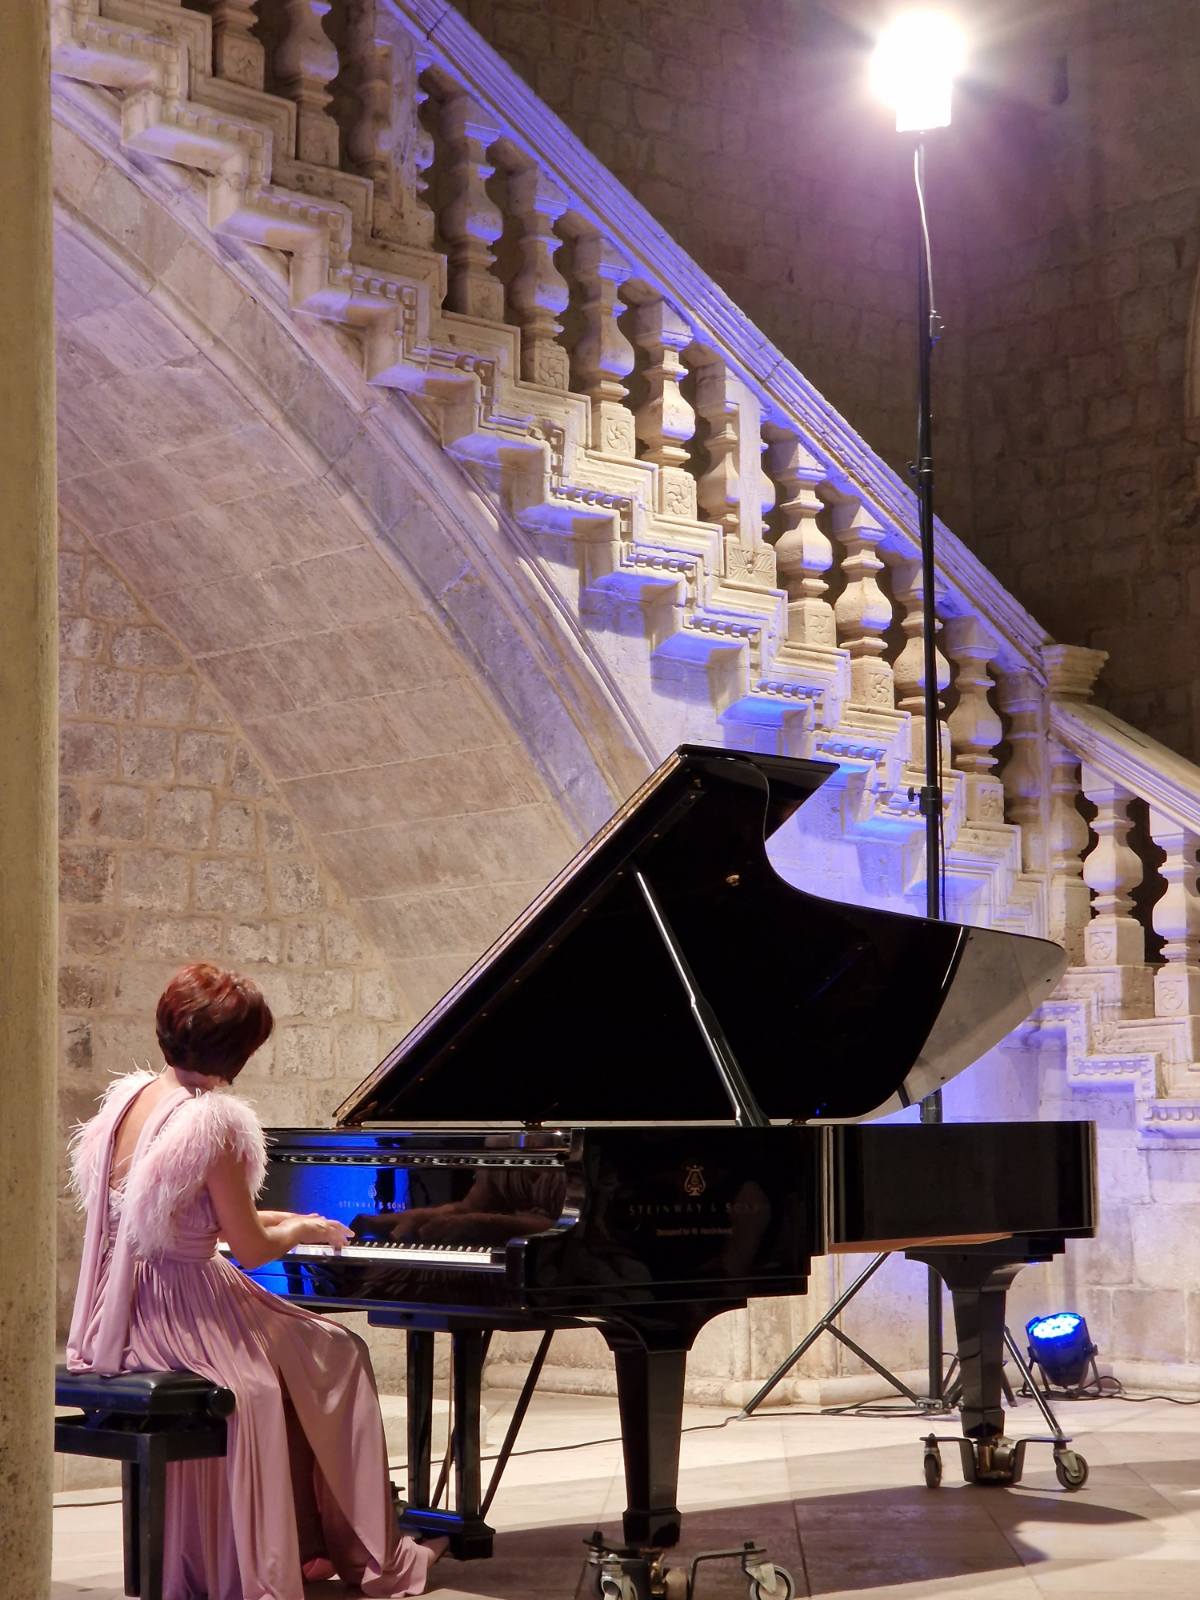 U utorak, 20. rujna 2022. godine, u Kneževom Dvoru u Dubrovniku, održan je donacijski koncert u organizaciji Dubrovačkog simfonijskog orkestra i pijanistice Naire Asatryan. Na koncertu su izvedene skladbe Schumanna, Schuberta i Chopina, a sav prihod od ulaznica je namijenjen Osnovnoj školi Glina.